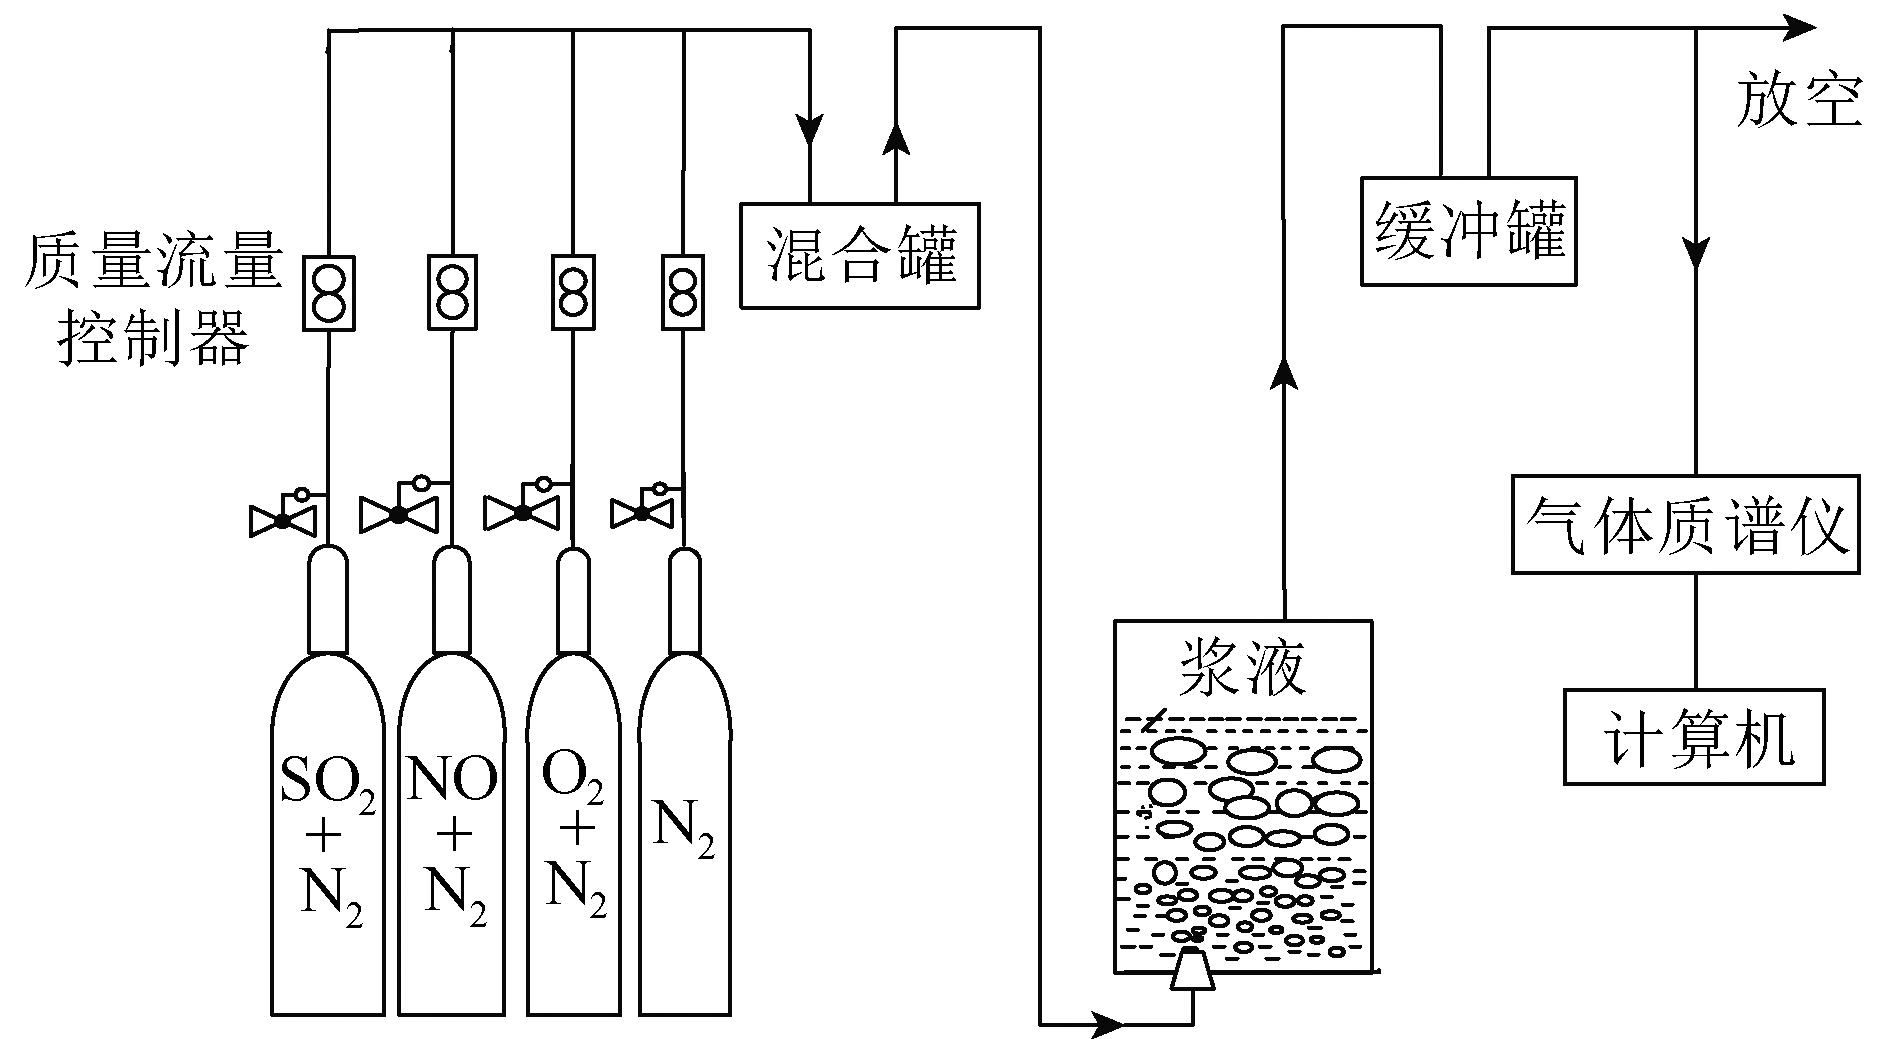 焦炉烟气钢渣湿法联合脱硫脱硝试验研究